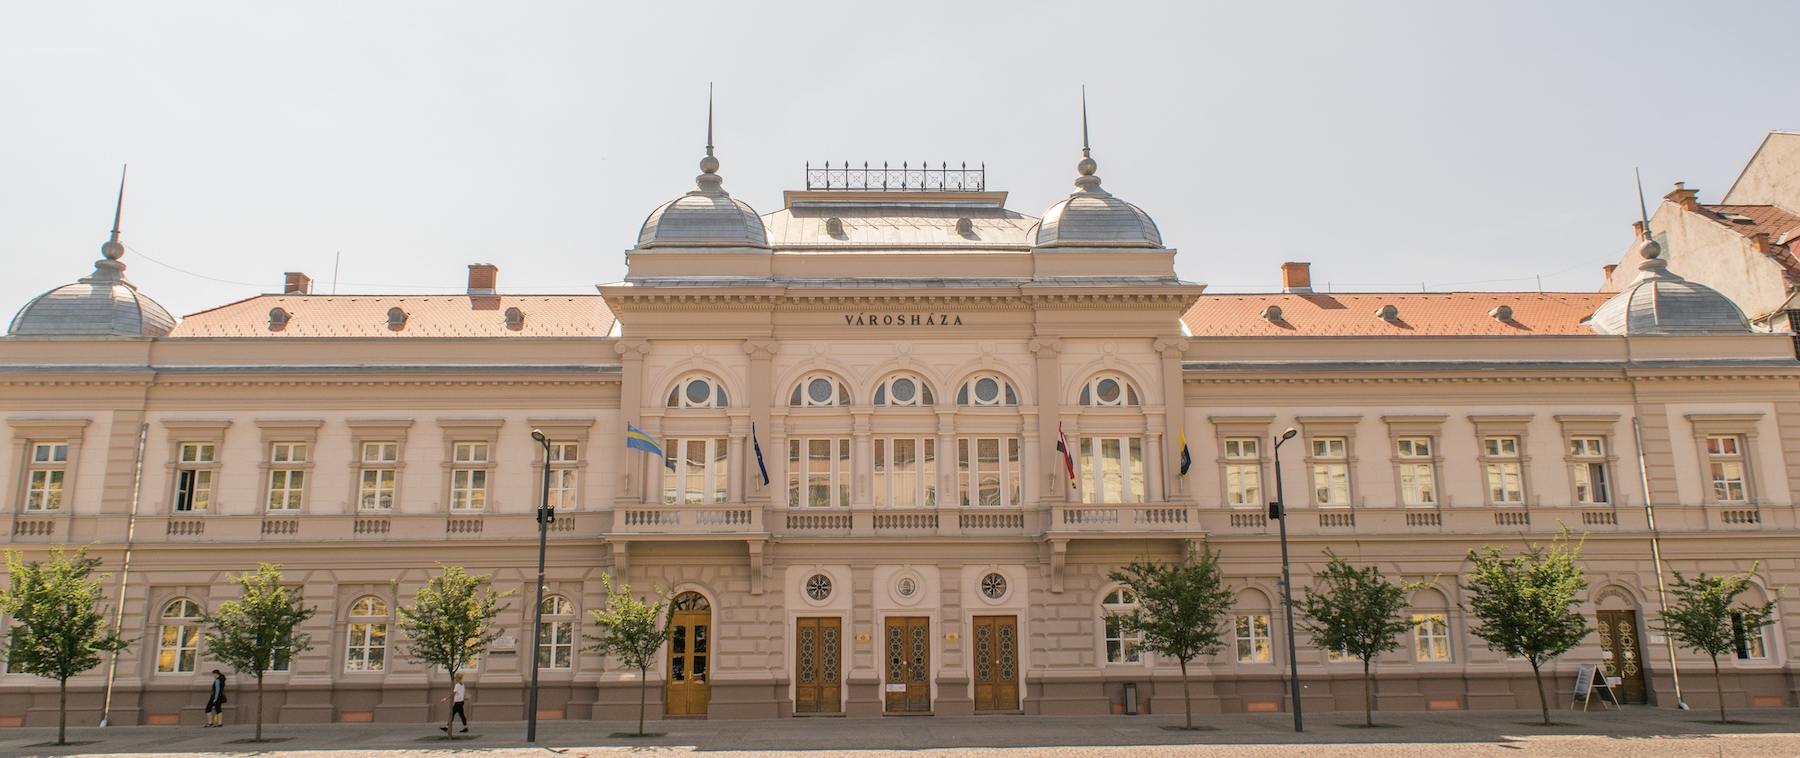 A szolnoki Városháza a 2016-os felújítás után - Fotó: Máté/Wikimedia Commons - CC-BY-SA-4.0